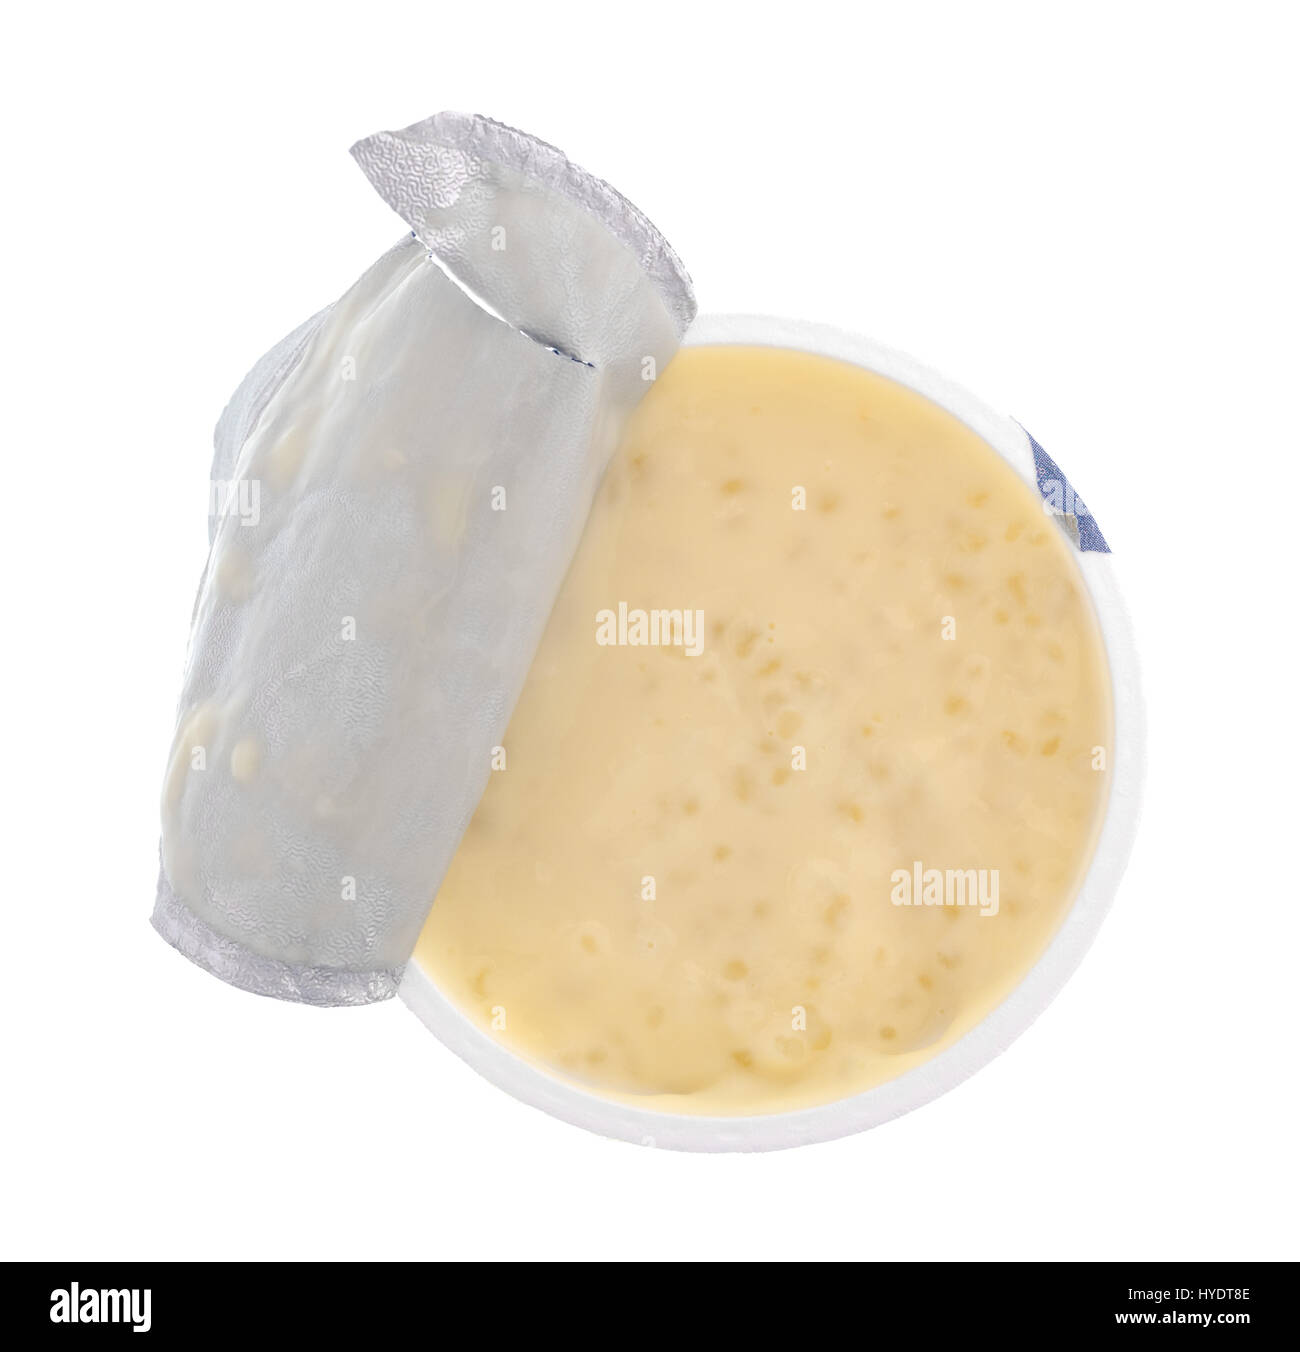 Draufsicht der Tapiokapudding in einer geöffneten kleinen Plastikbehälter mit dem Deckel geschält zurück isoliert auf einem weißen Hintergrund. Stockfoto